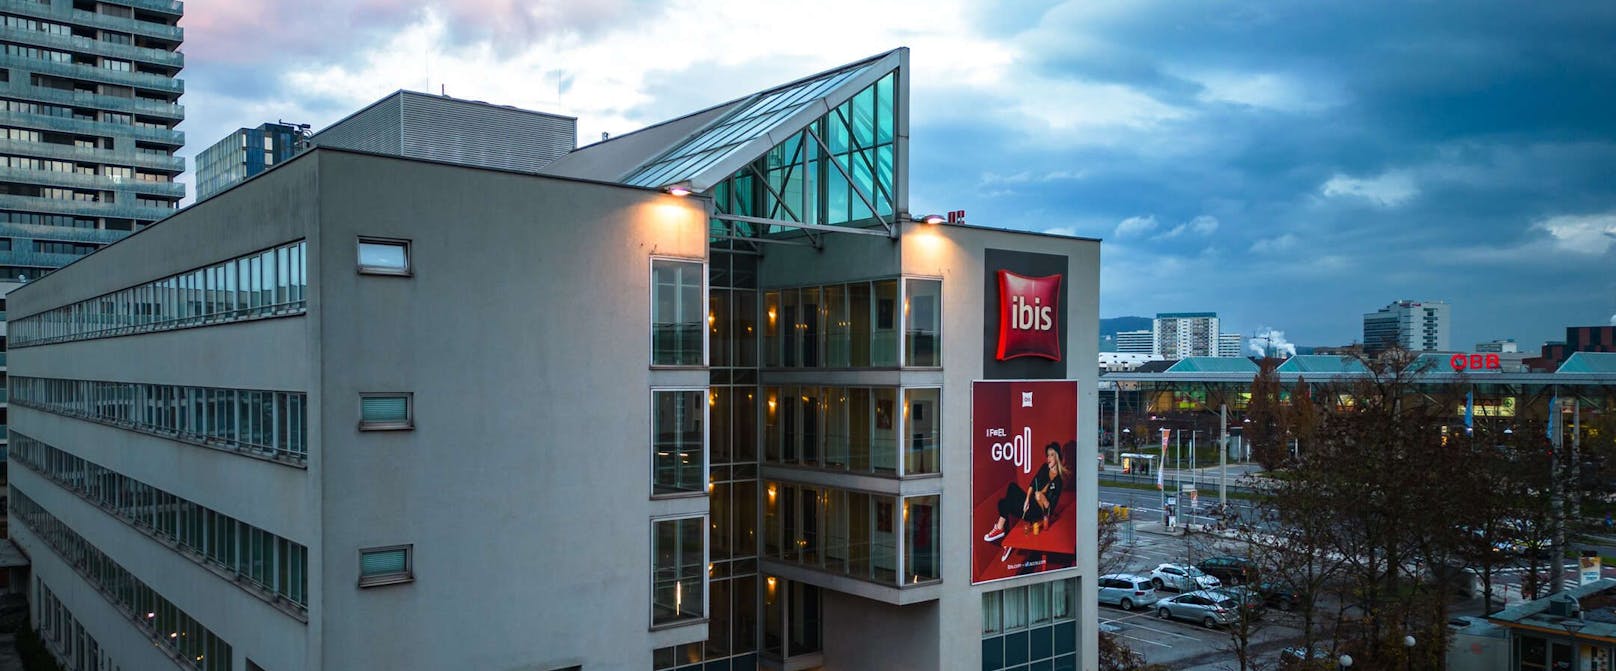 Das Ibis-Hotel am Linzer Hauptbahnhof stellt am 23. Dezember seinen Betrieb ein.